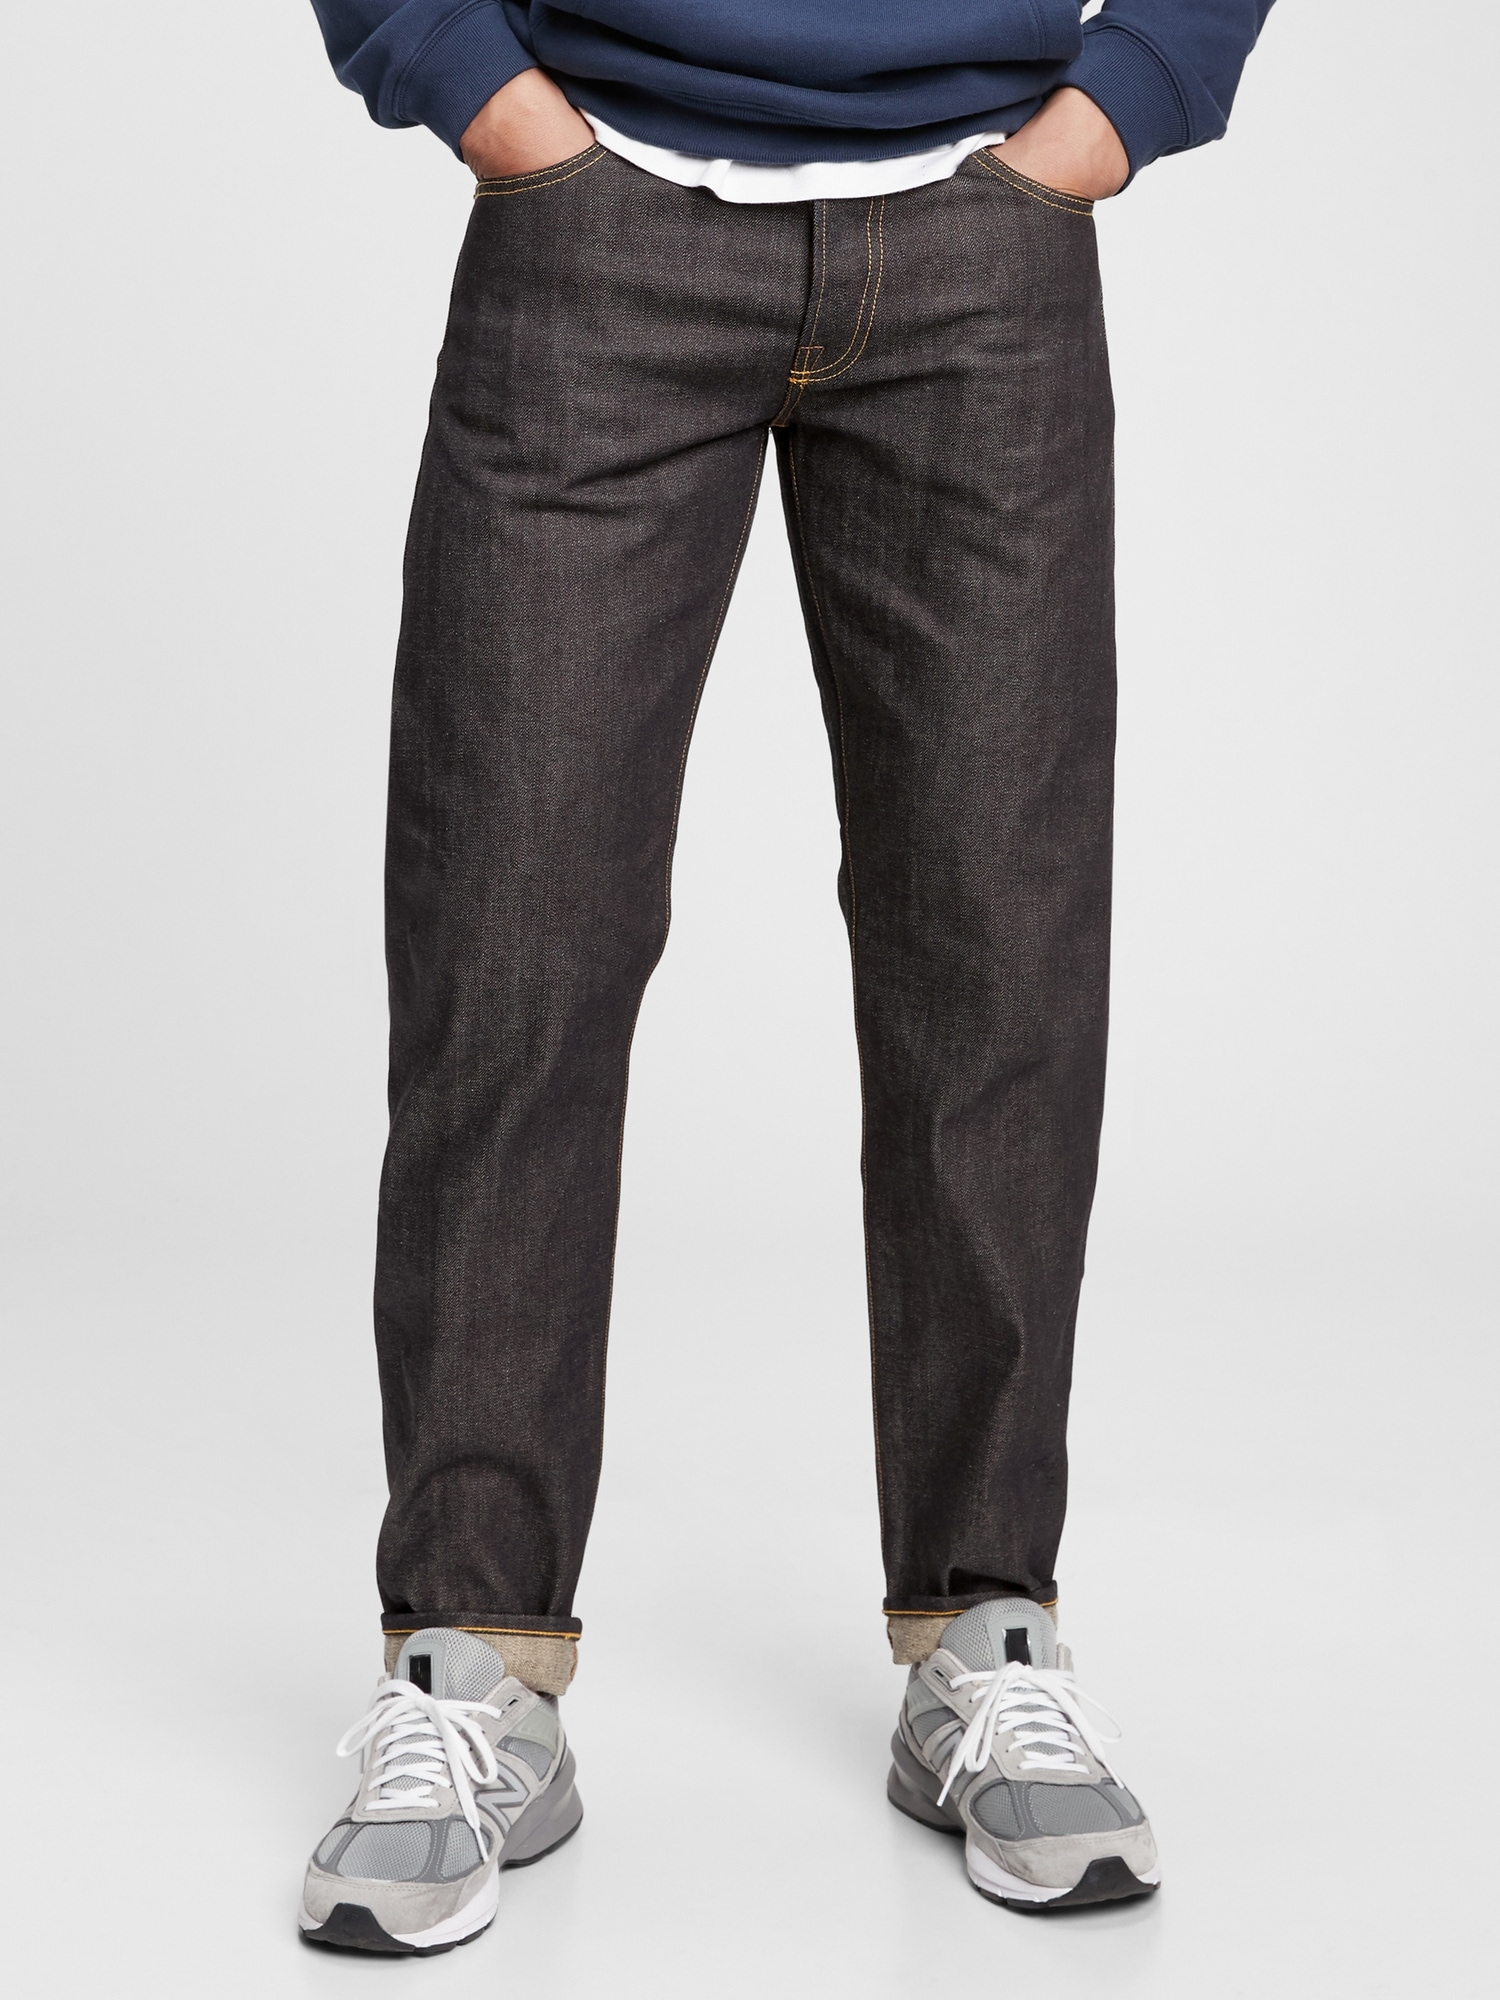 GAP Men's Straight Fit Denim Jeans, Tinted Blue, 40W x 34L